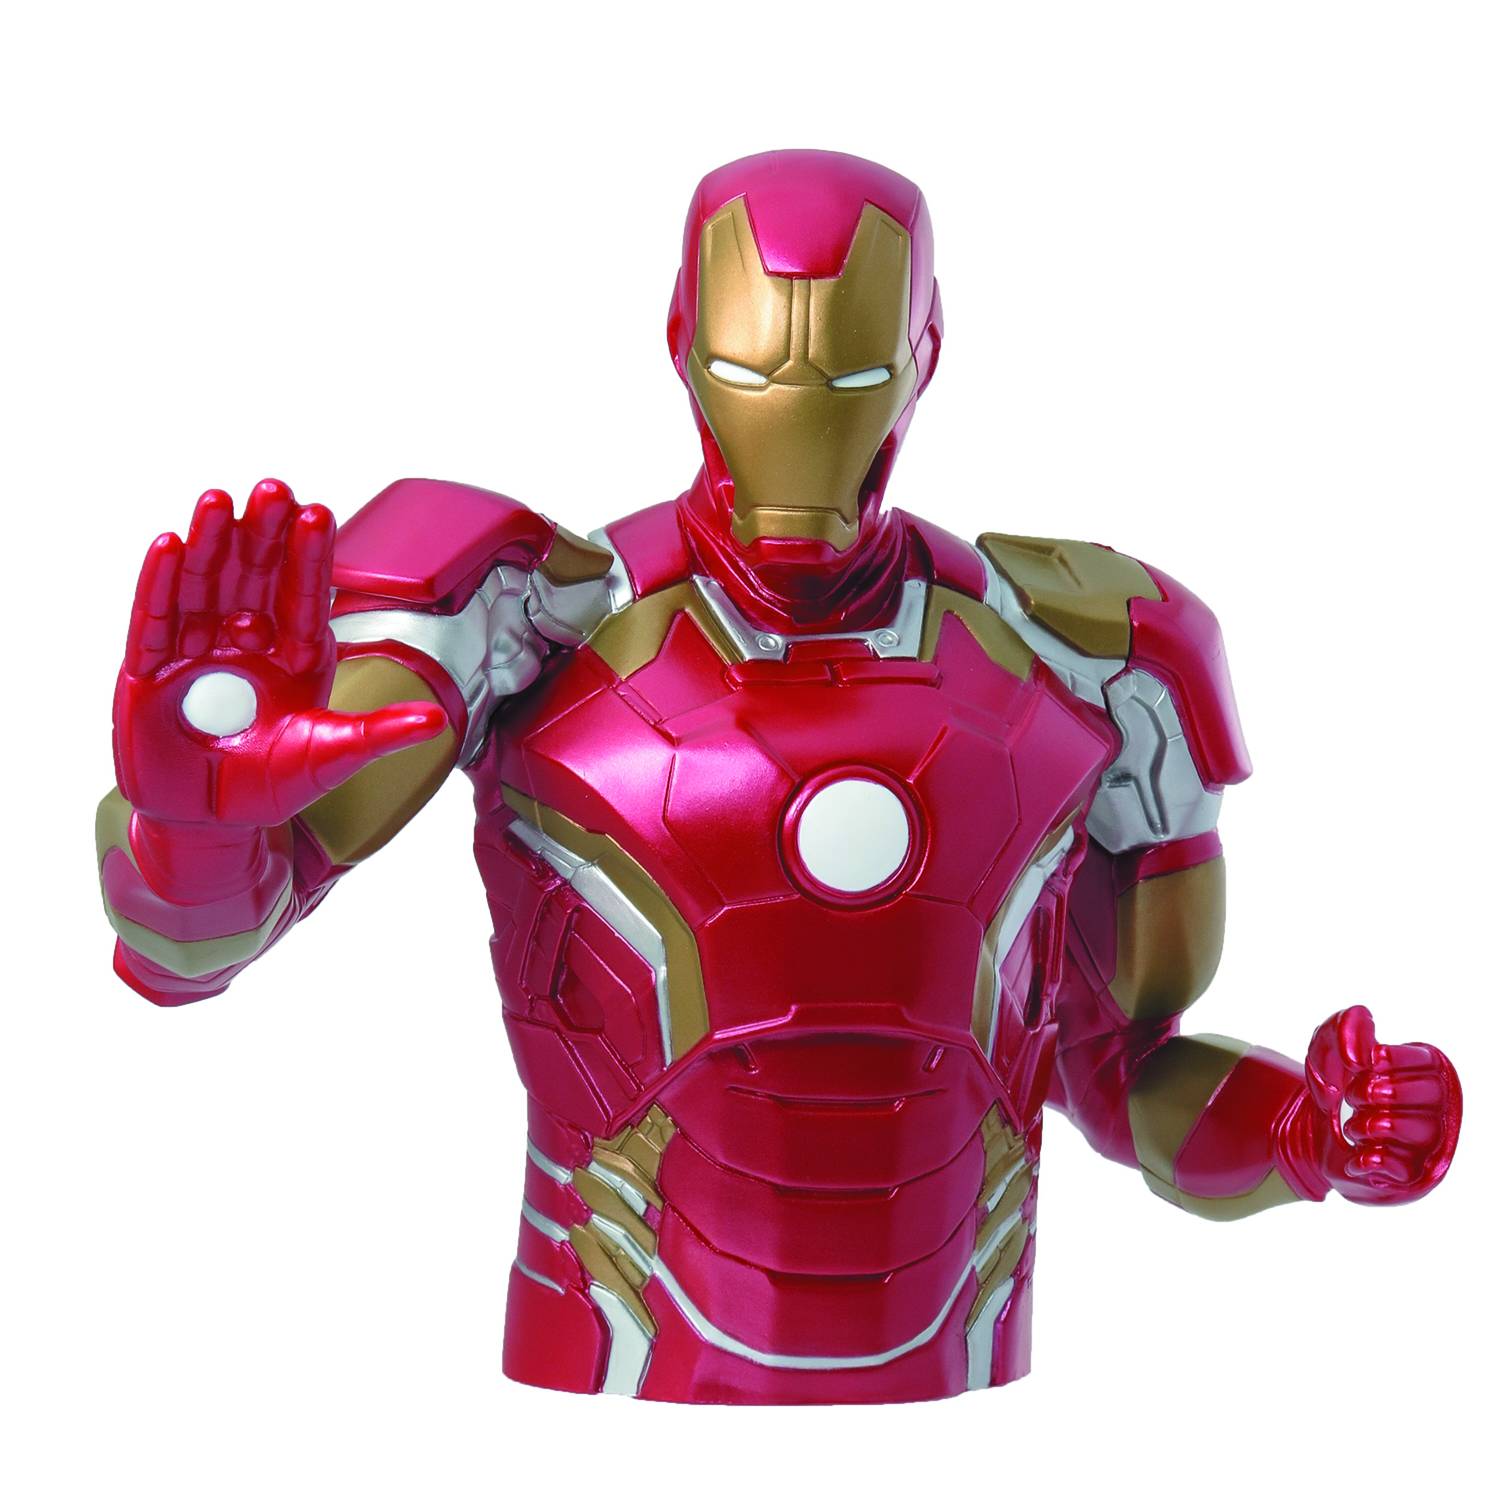 Avengers 2 Iron Man Bust Bank